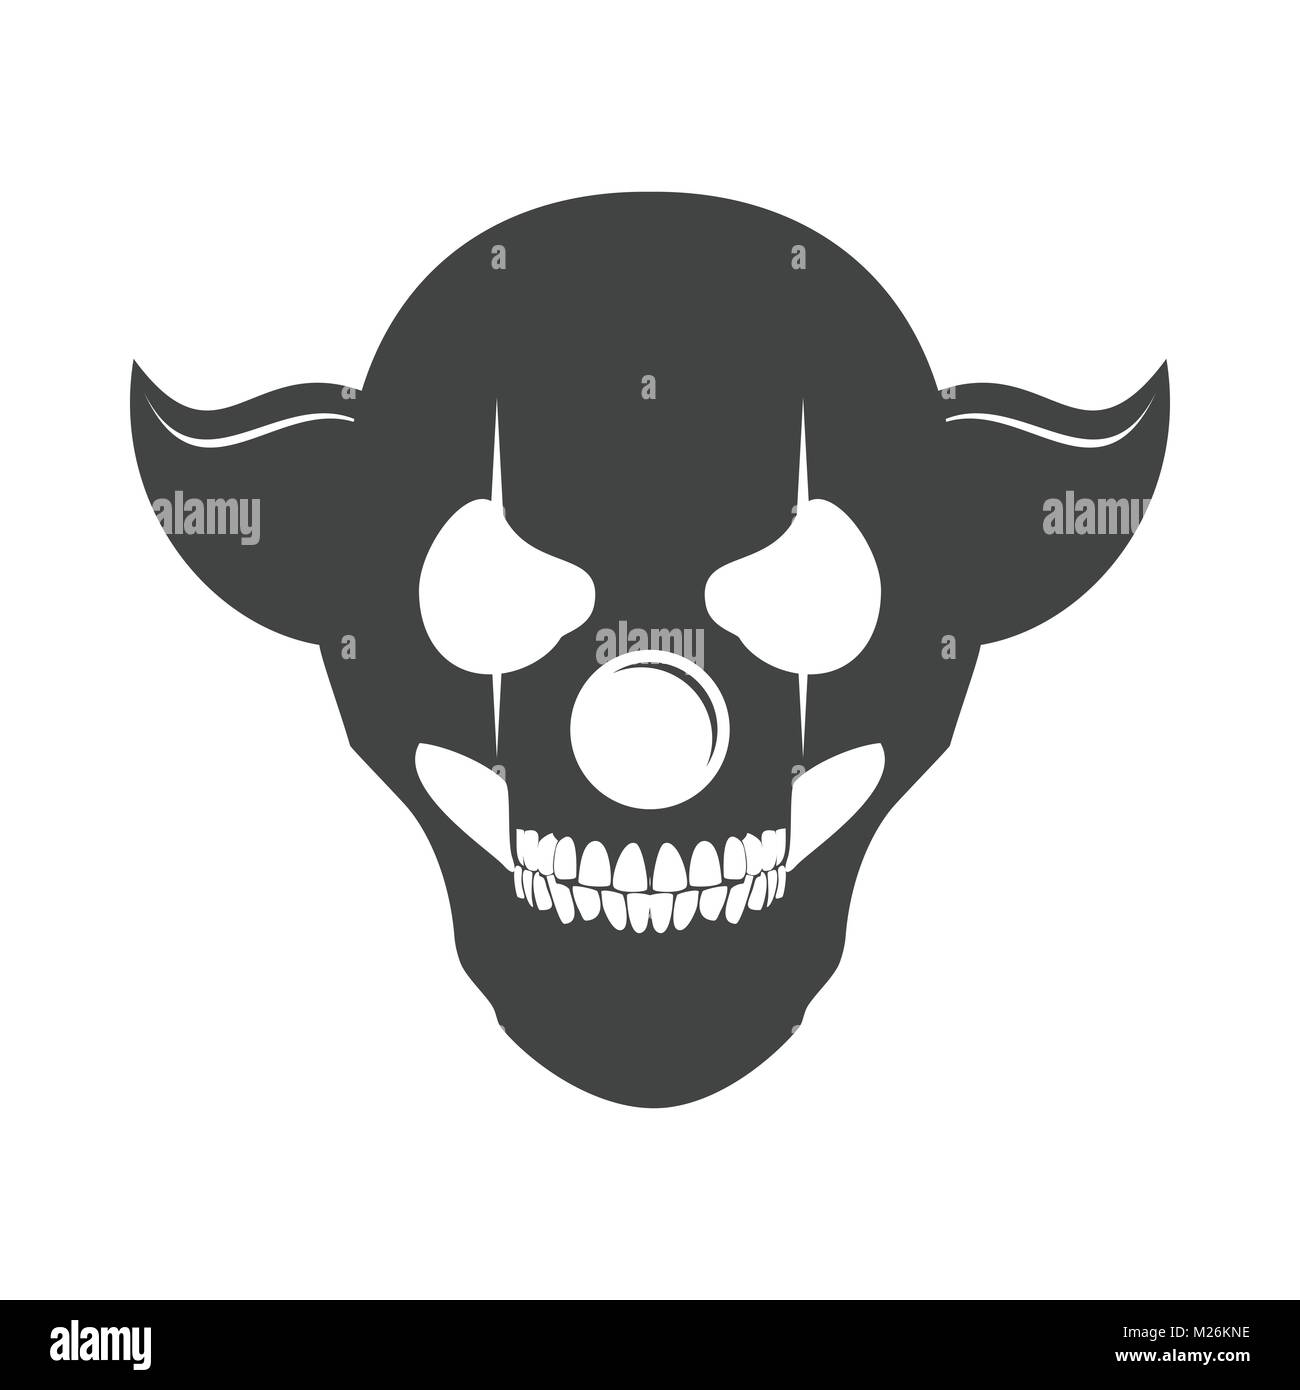 Clowny Skull Head Logo Symbol Vector Graphic Design Stock Vector